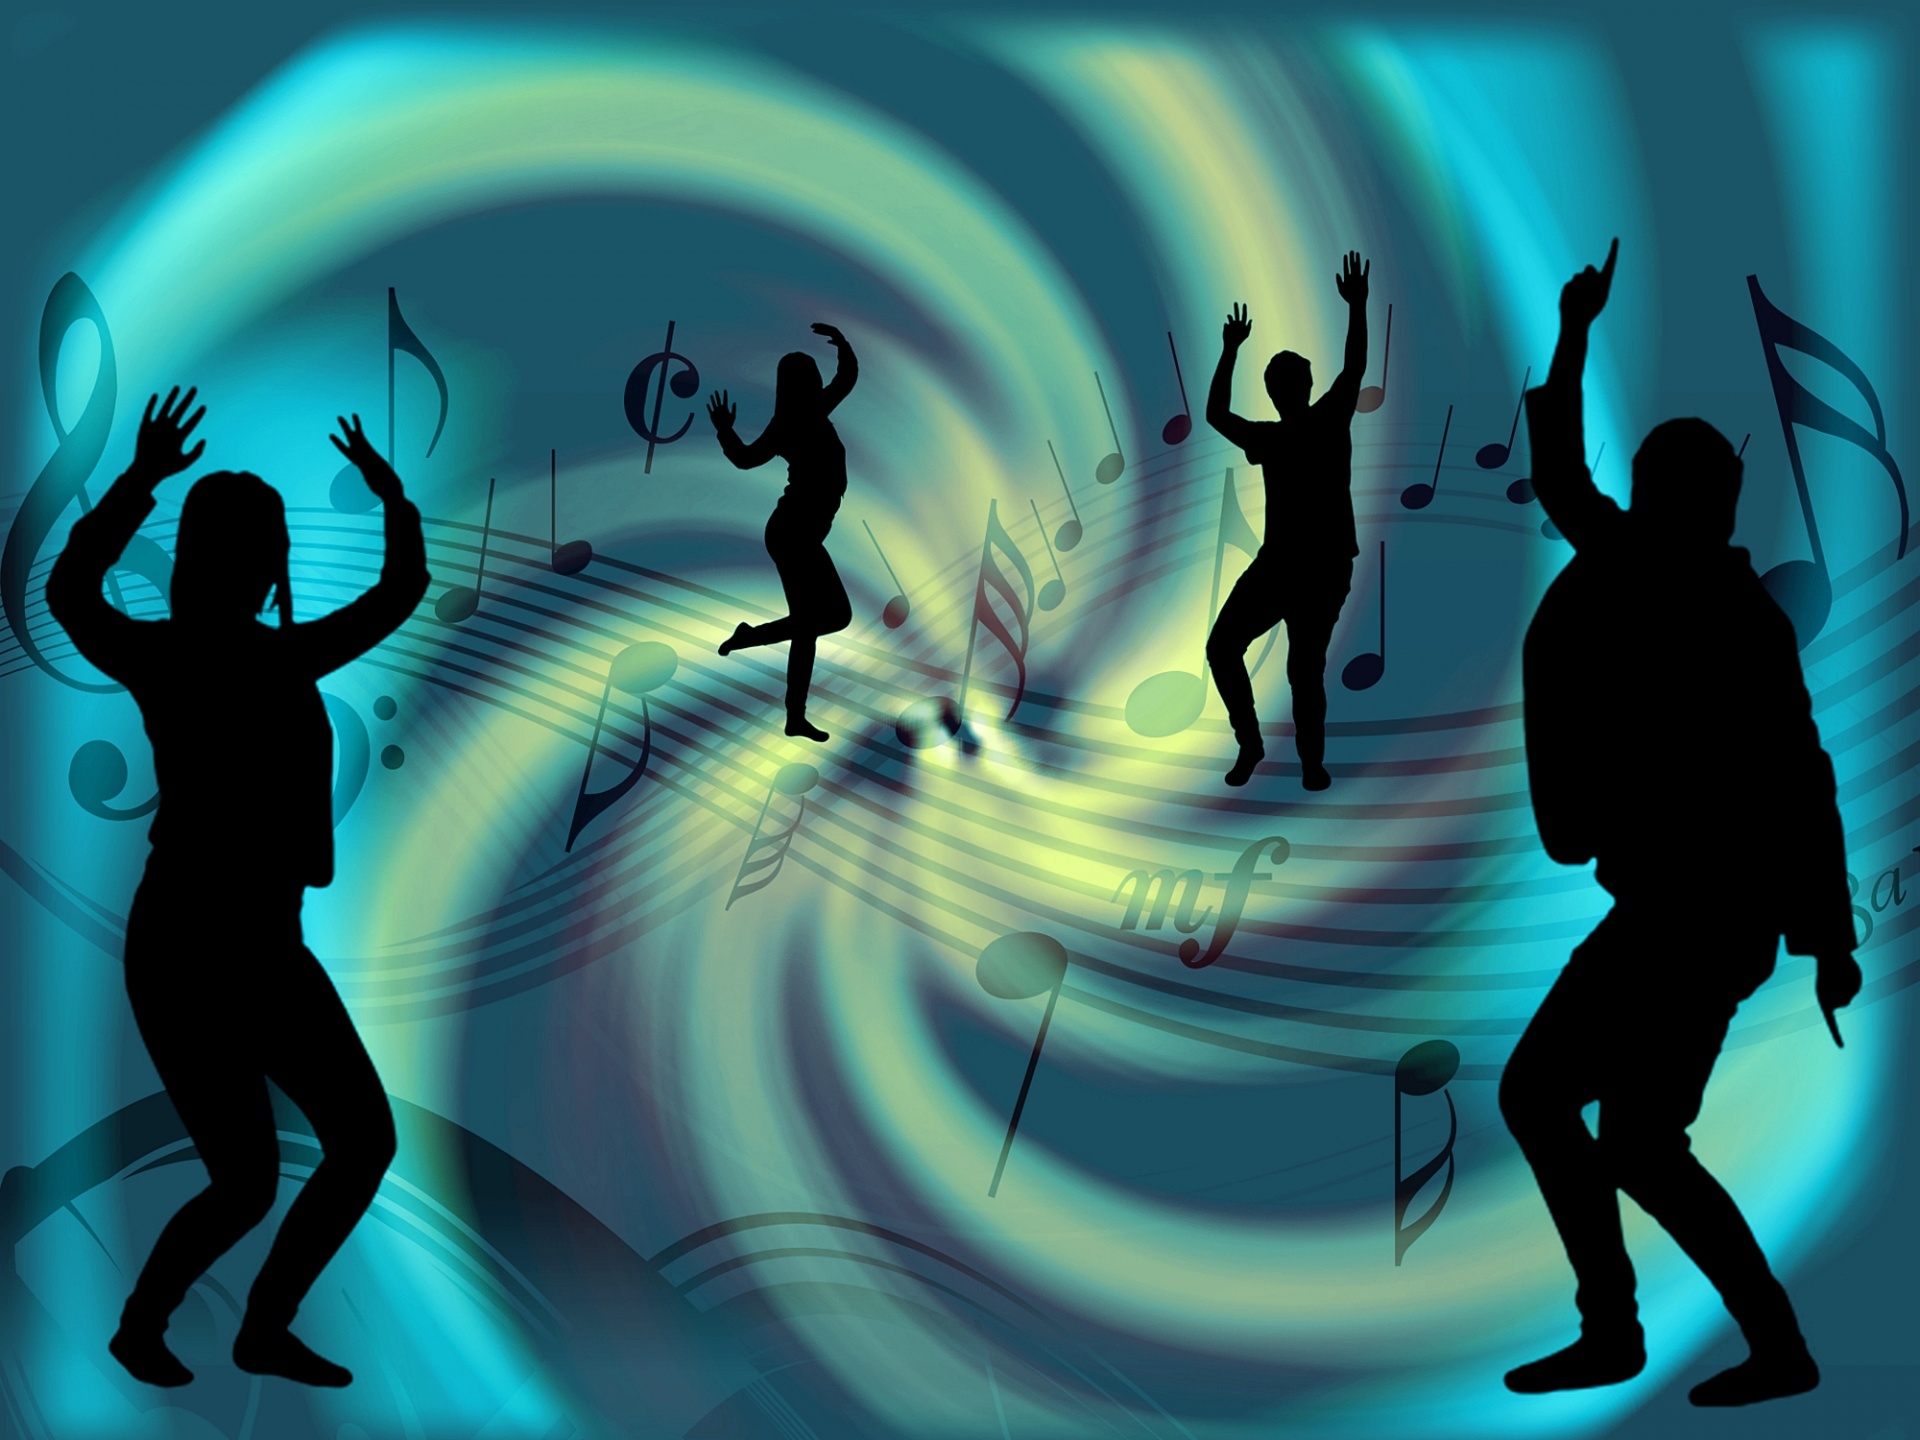 Музыка танцы музыка давайте. Люди танцуют. Танцевальный образ. Танцевальная композиция. Картинки с танцующими людьми.